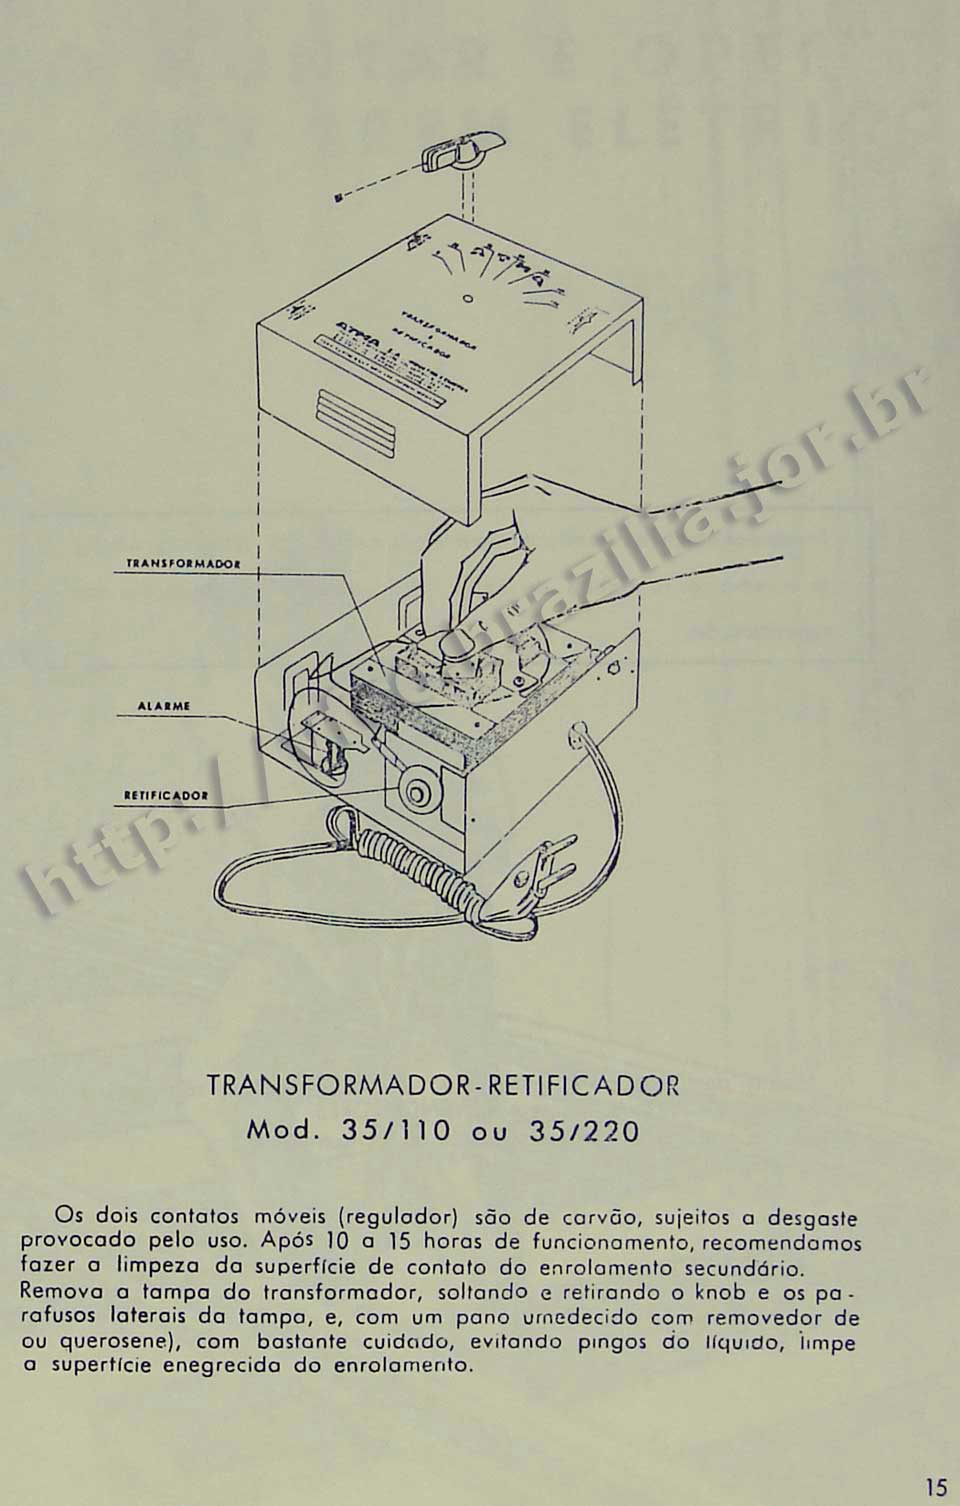 Orientações de manutenção do controlador, na Página 15 do manual "Como montar e operar seu trem elétrico Atma" para maquete de ferreomodelismo